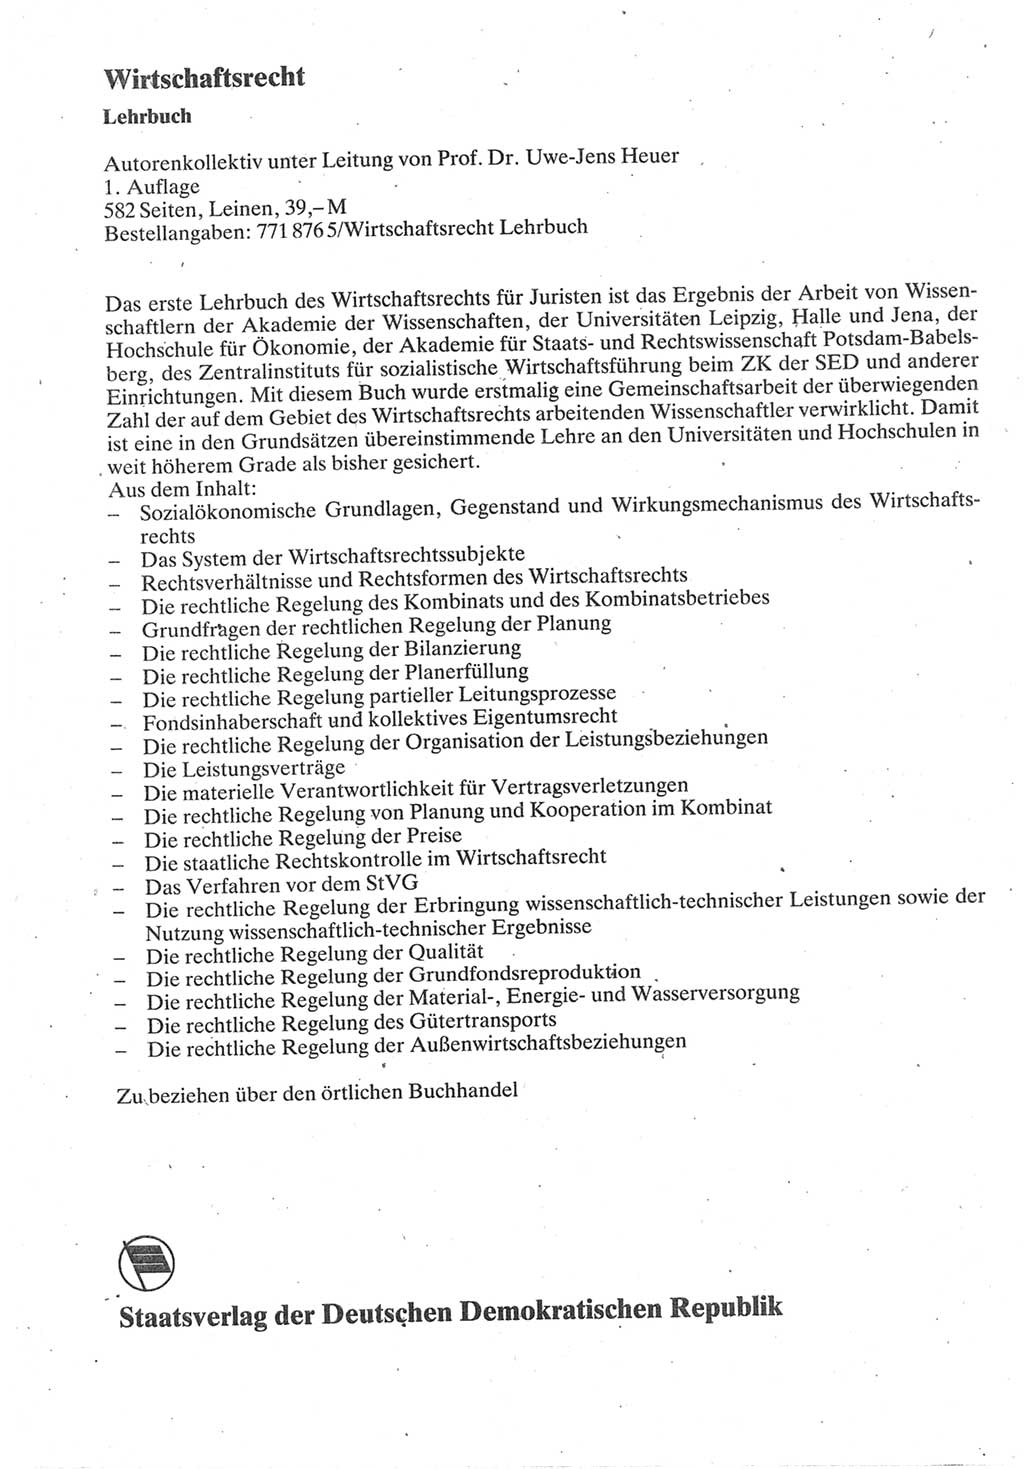 Strafverfahrensrecht [Deutsche Demokratische Republik (DDR)], Lehrbuch 1987, Seite 414 (Strafverf.-R. DDR Lb. 1987, S. 414)